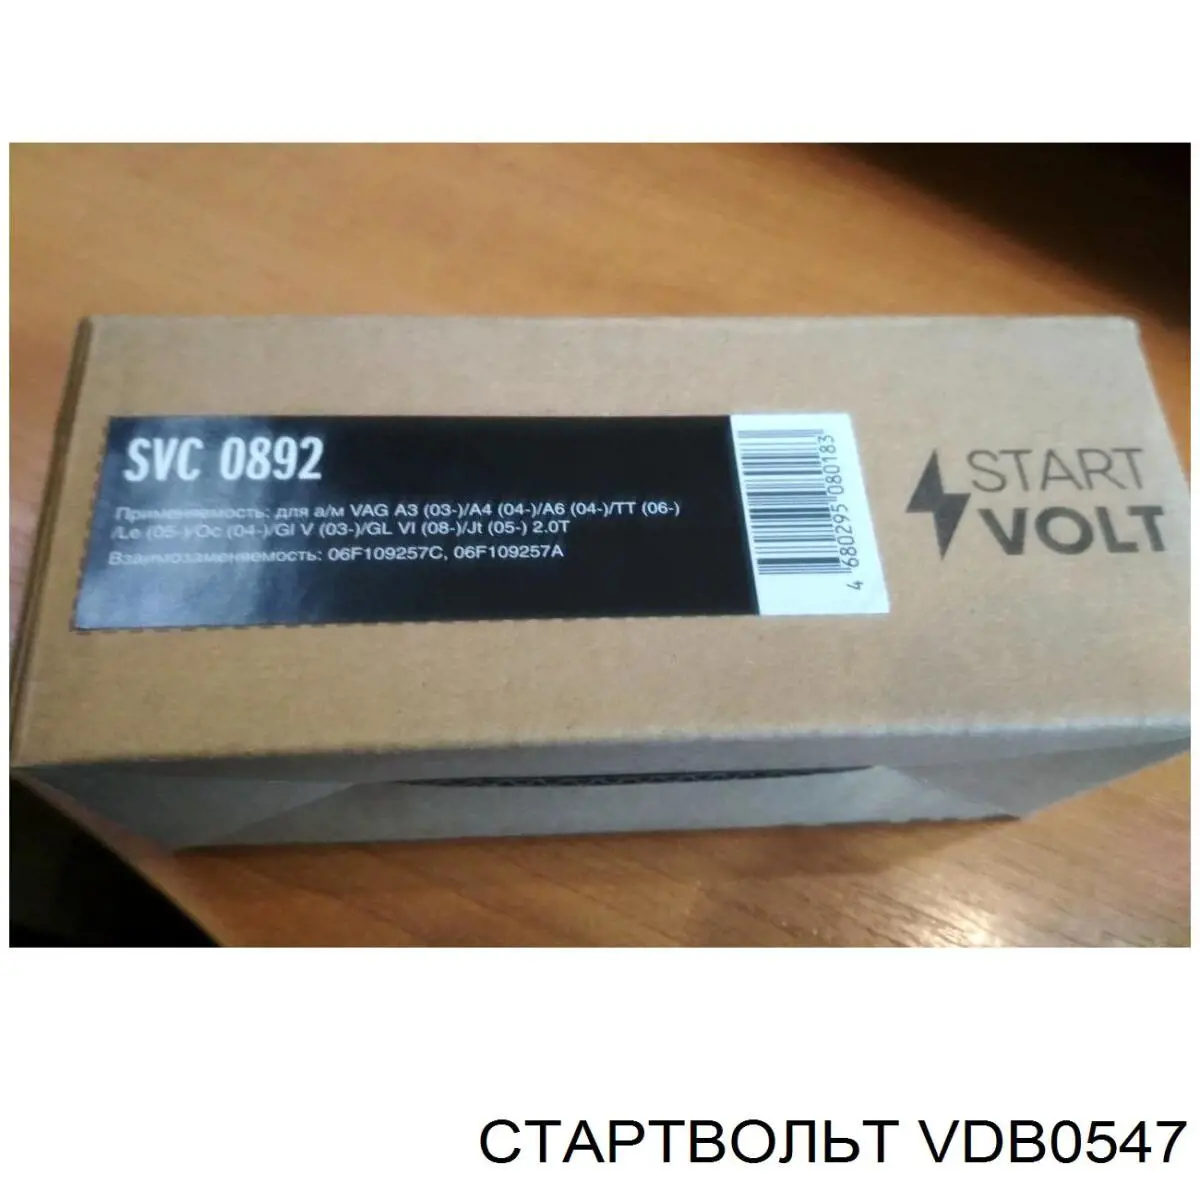 VDB 0547 STARTVOLT eixo de diodos do gerador